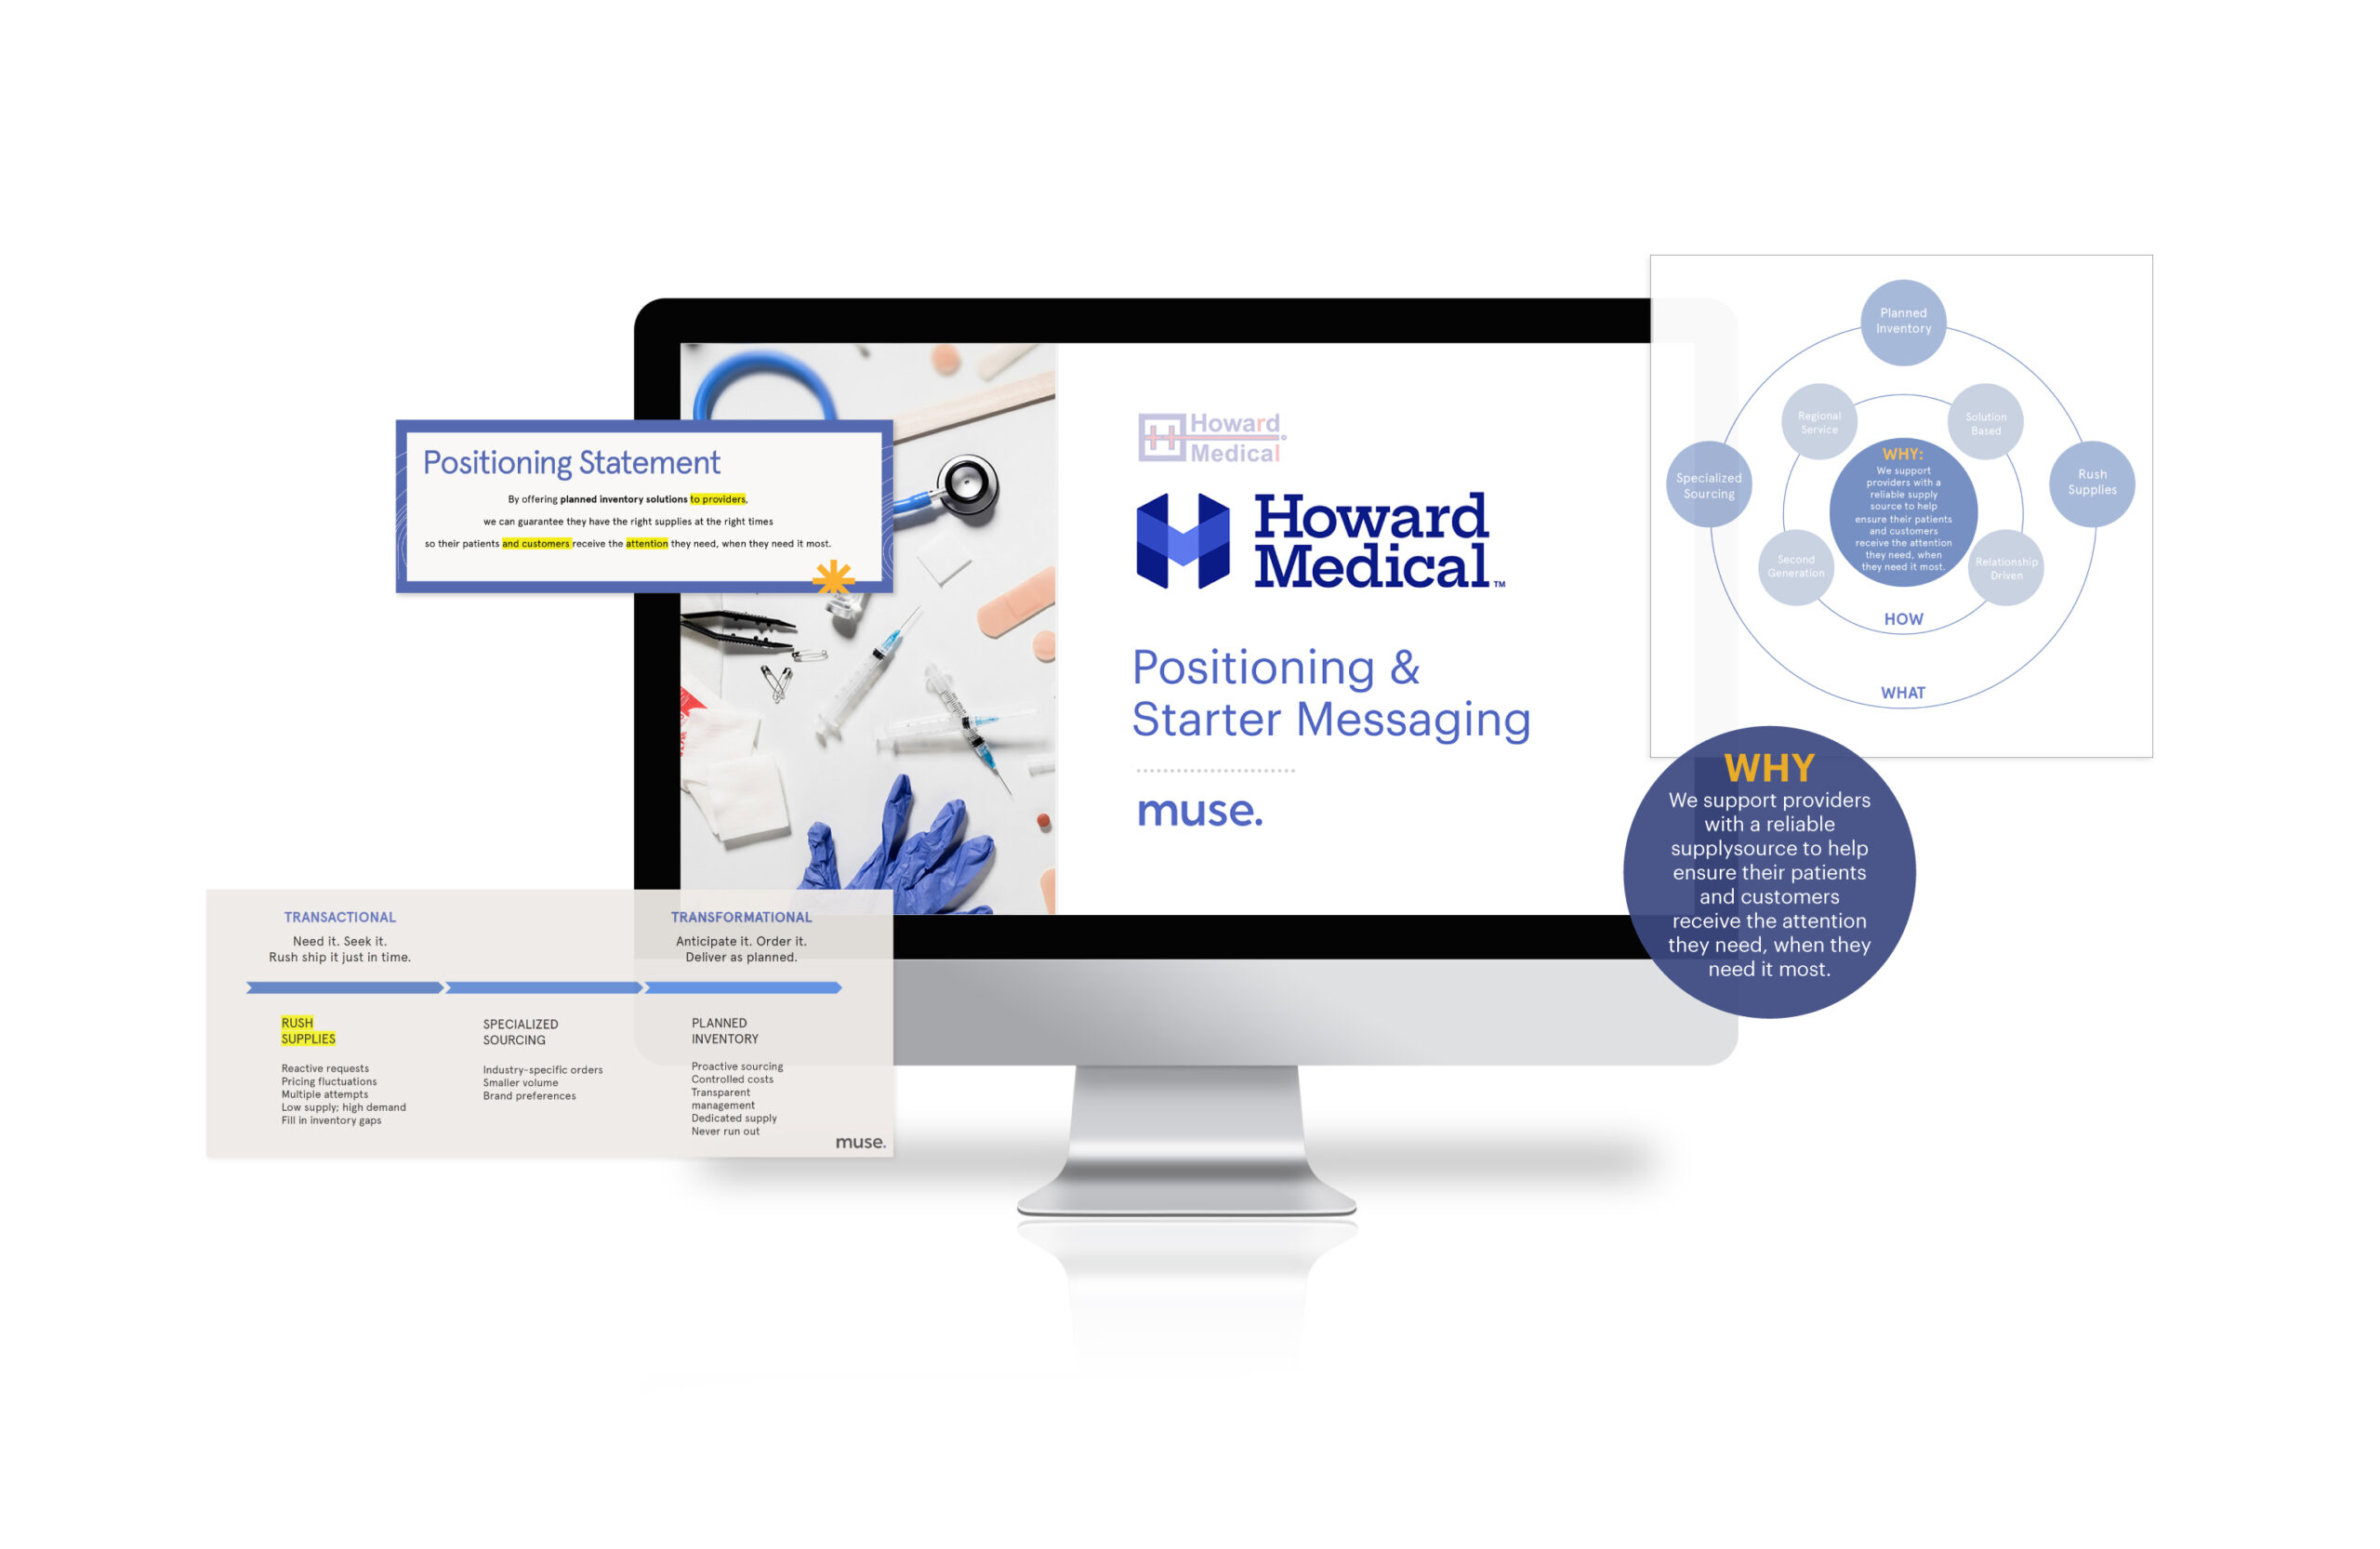 Howard Medical Company